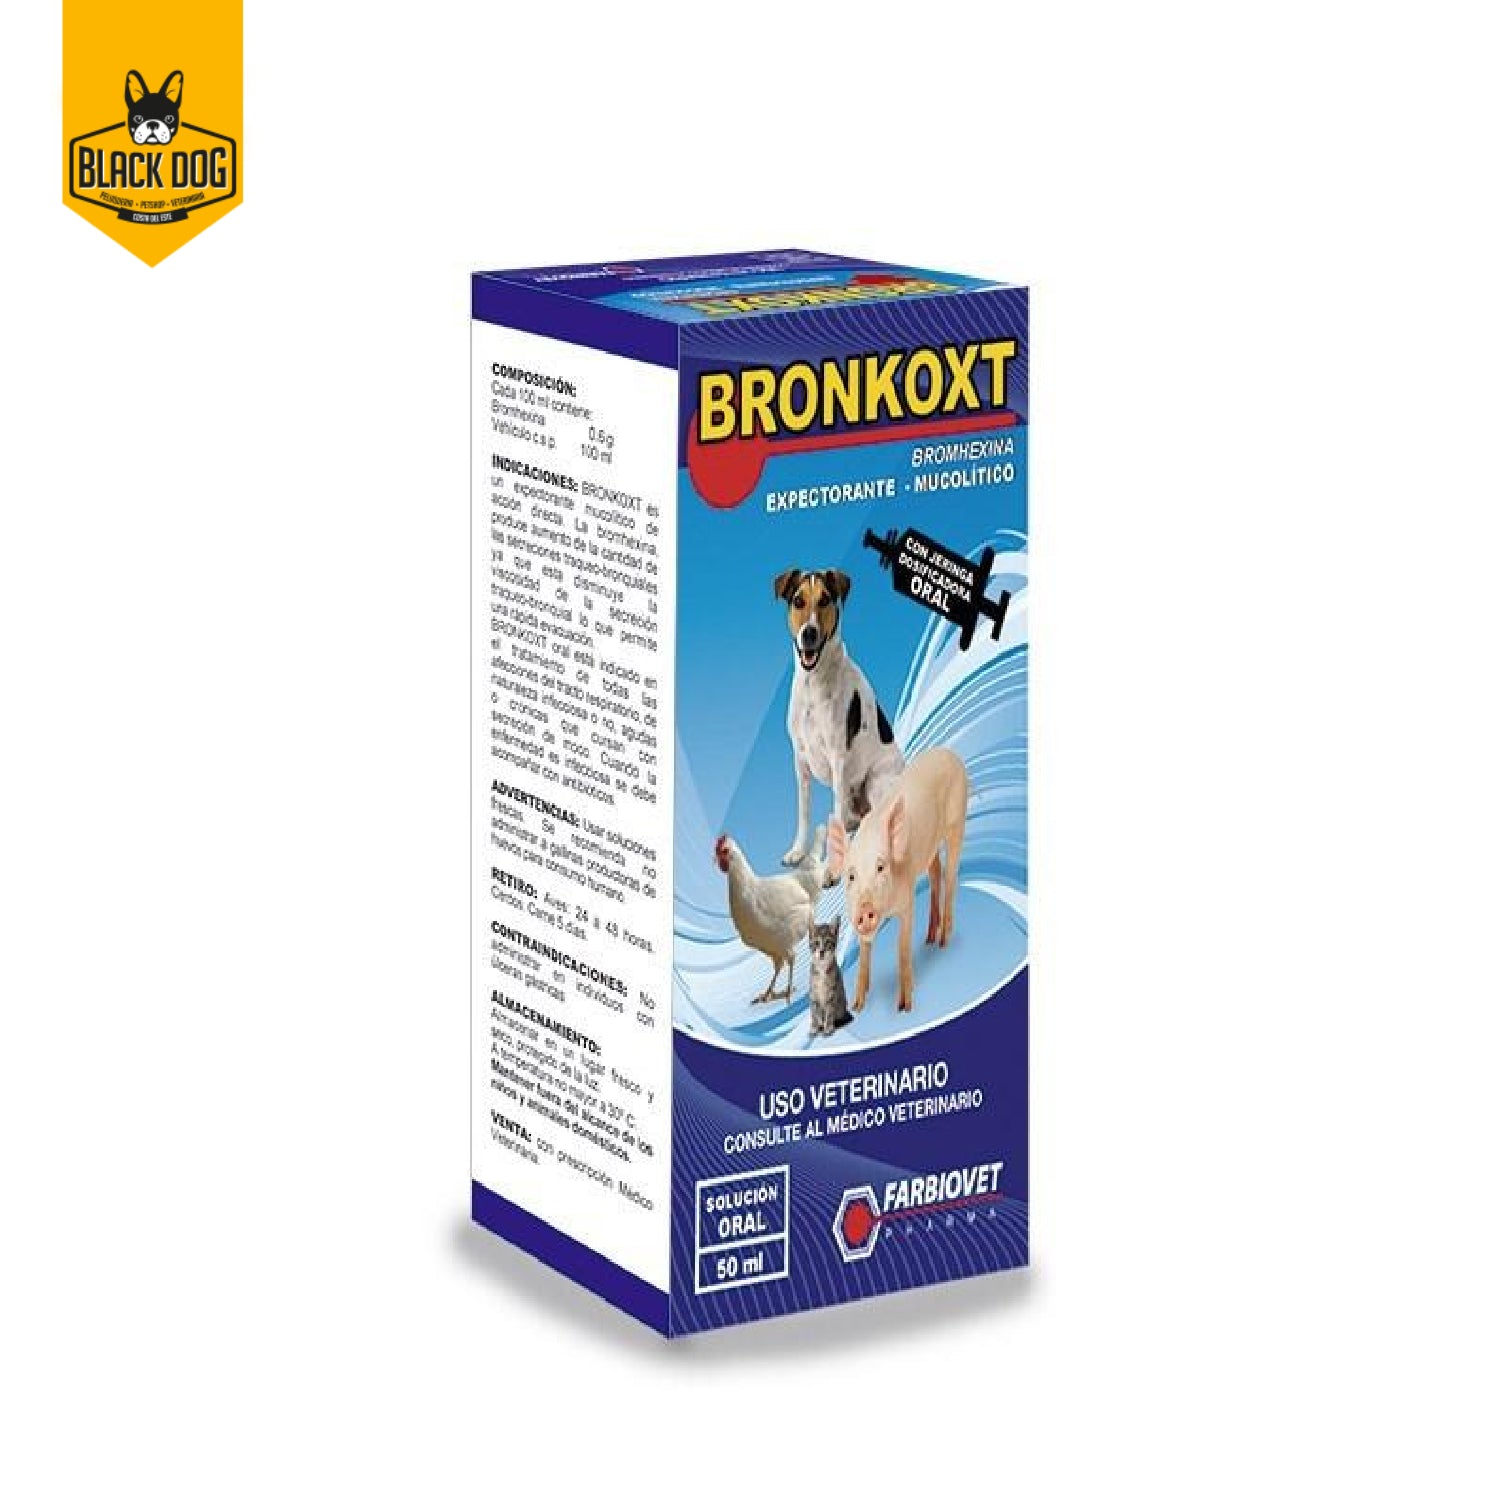 BRONKOXT | Bromhexina | Solución Oral 50ML - BlackDogPanama